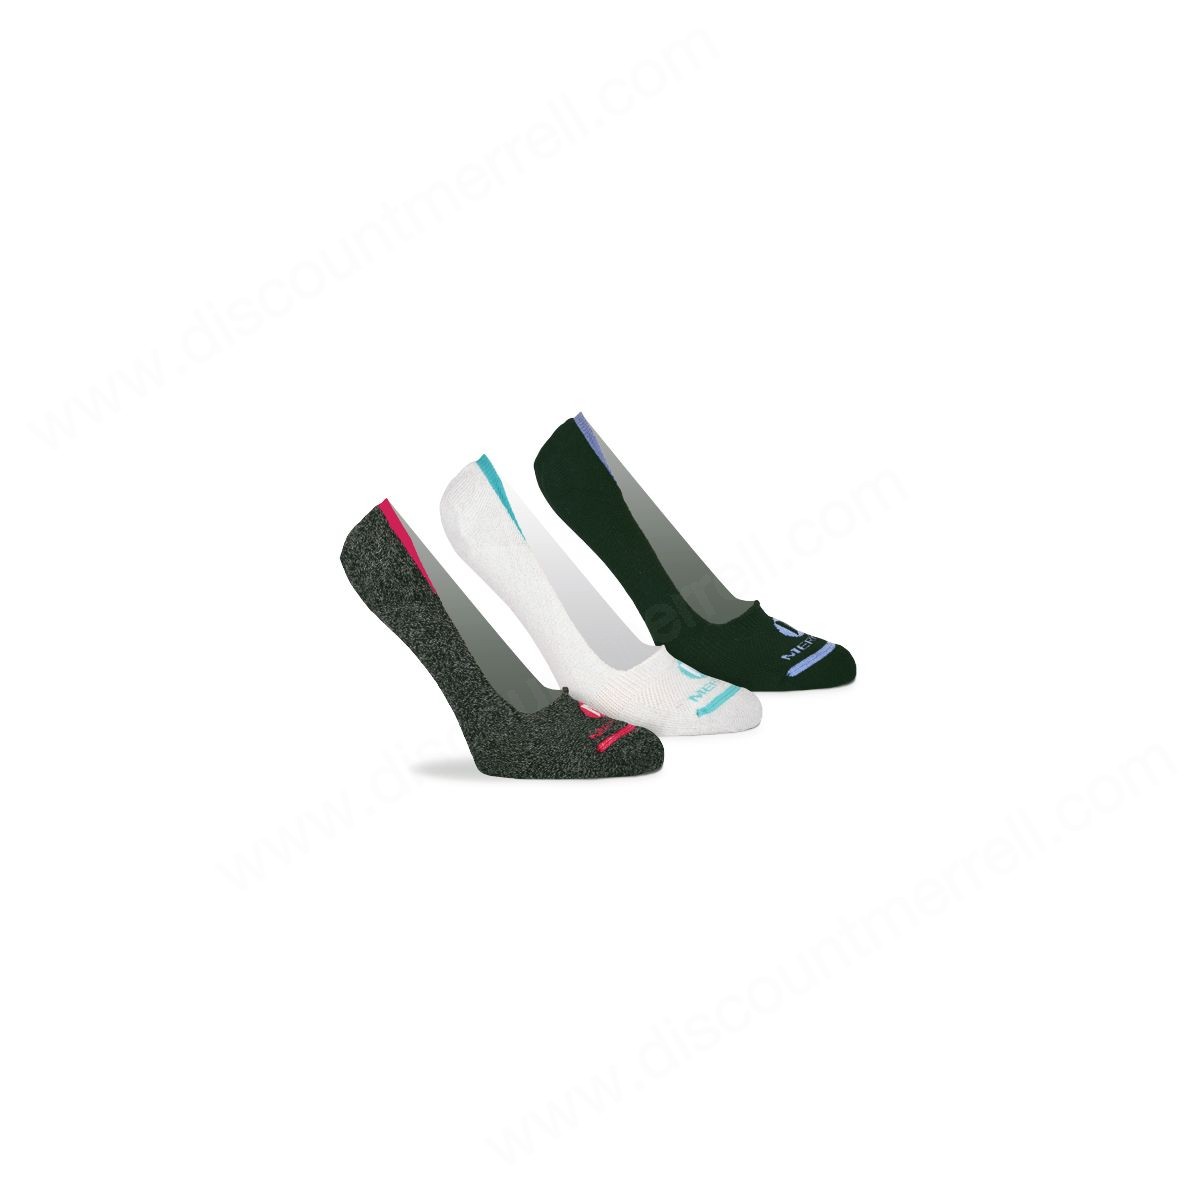 Merrell Woman's Repreve® Performance Liner Sock Pack Black Marl Asst - -0